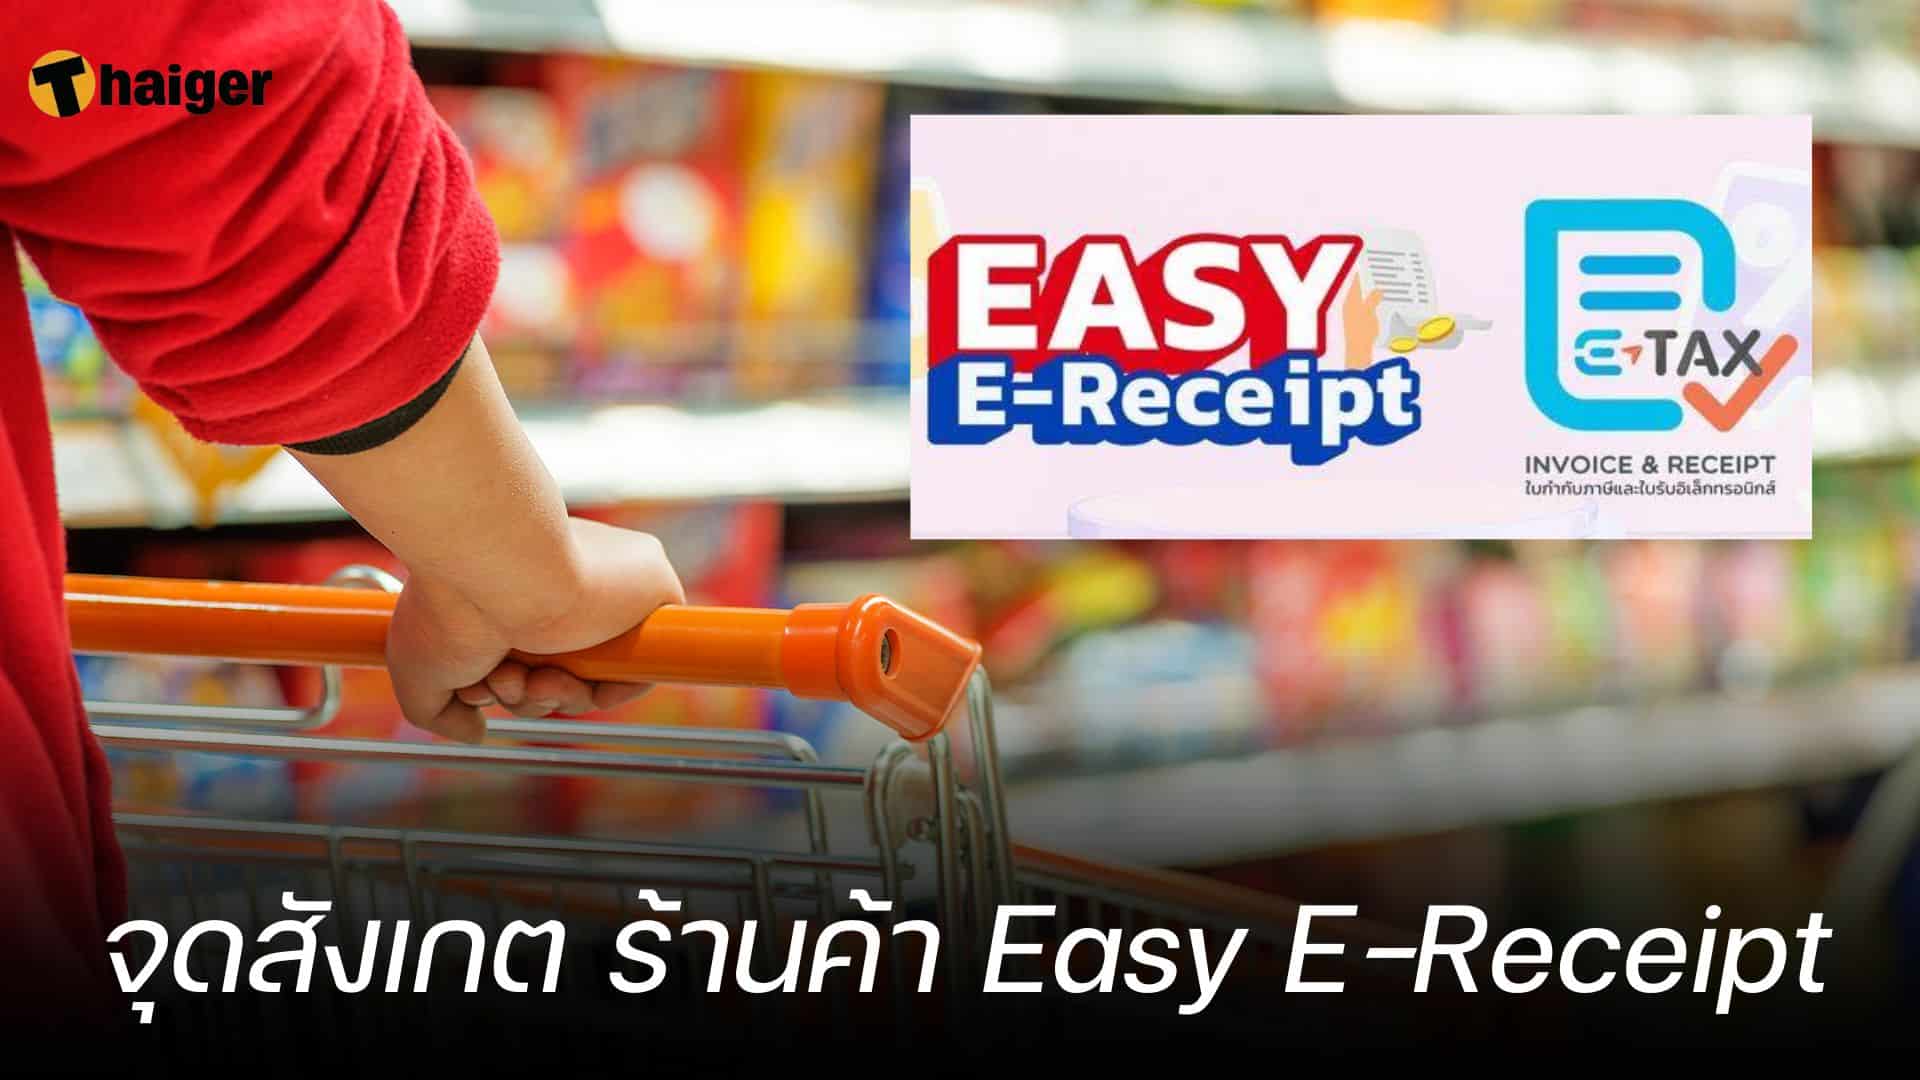 จุดสังเกต ร้านค้า Easy E-Receipt